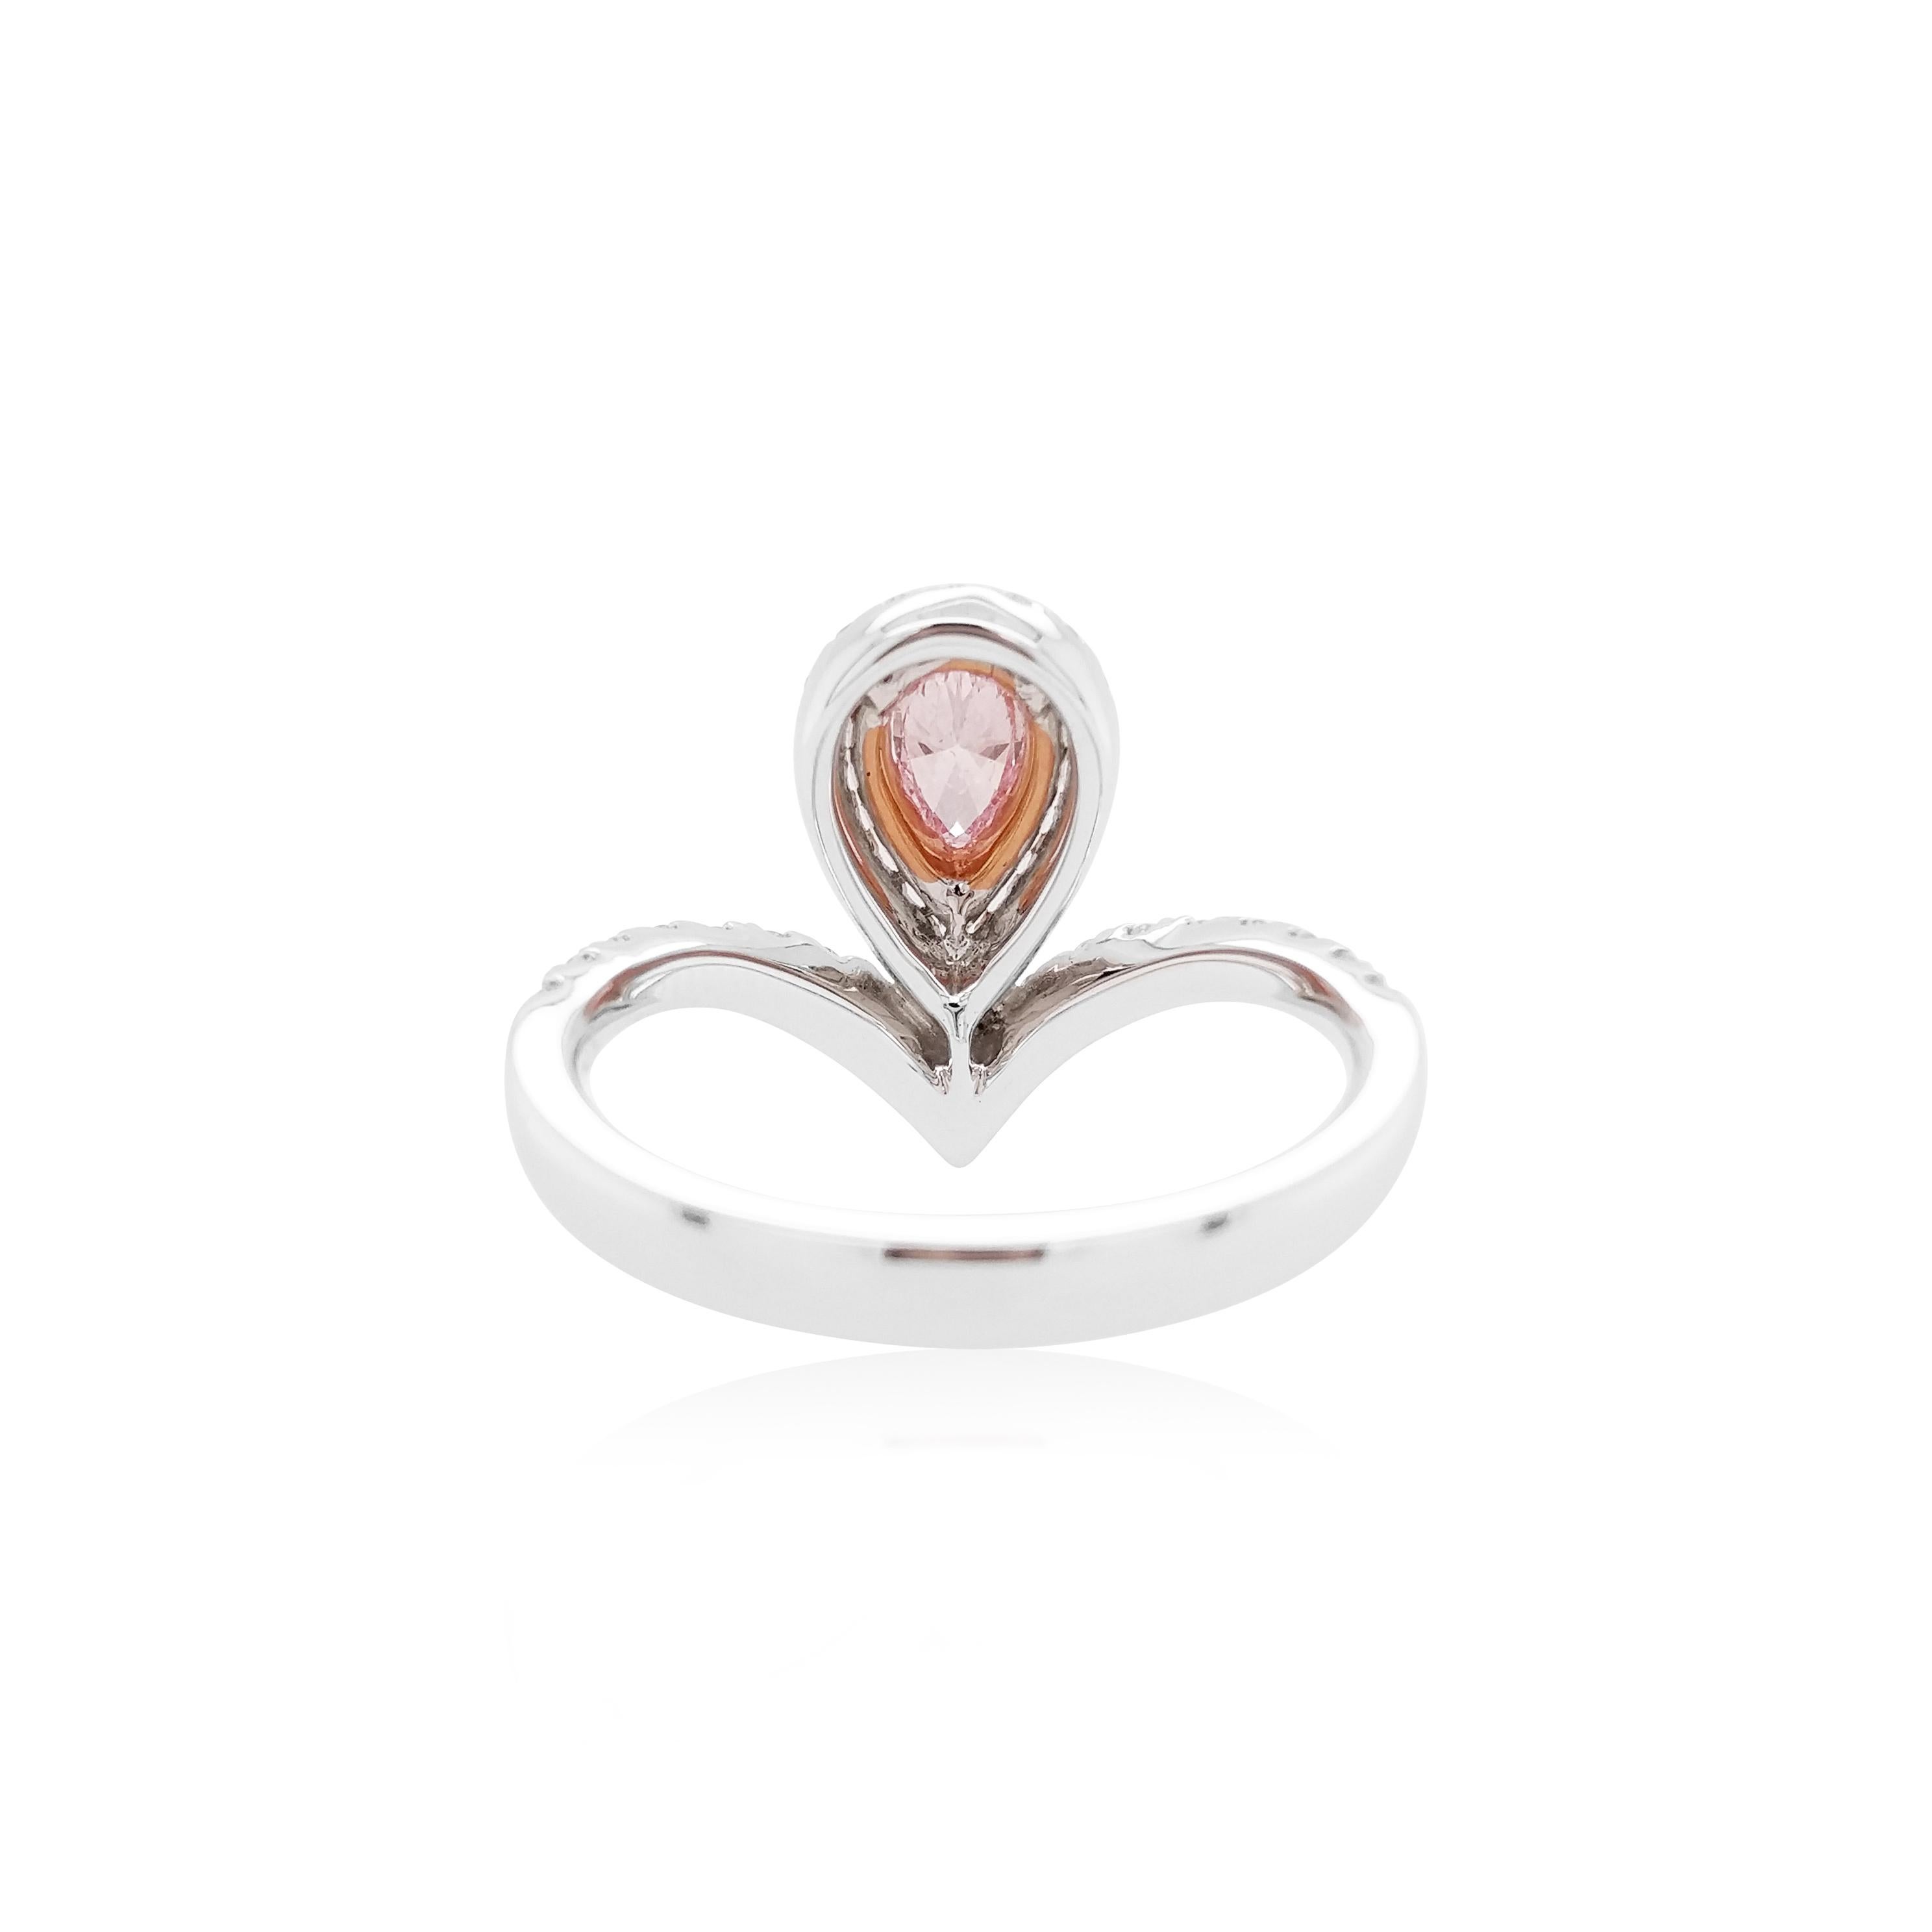 Dieser atemberaubende Ring zeichnet sich durch einen birnenförmigen Argyle Pink-Diamanten von außergewöhnlicher Qualität aus (Zwillingszertifizierung, Argyle- und GIA-zertifiziert), der im Mittelpunkt des Designs steht und von Halos aus funkelnden